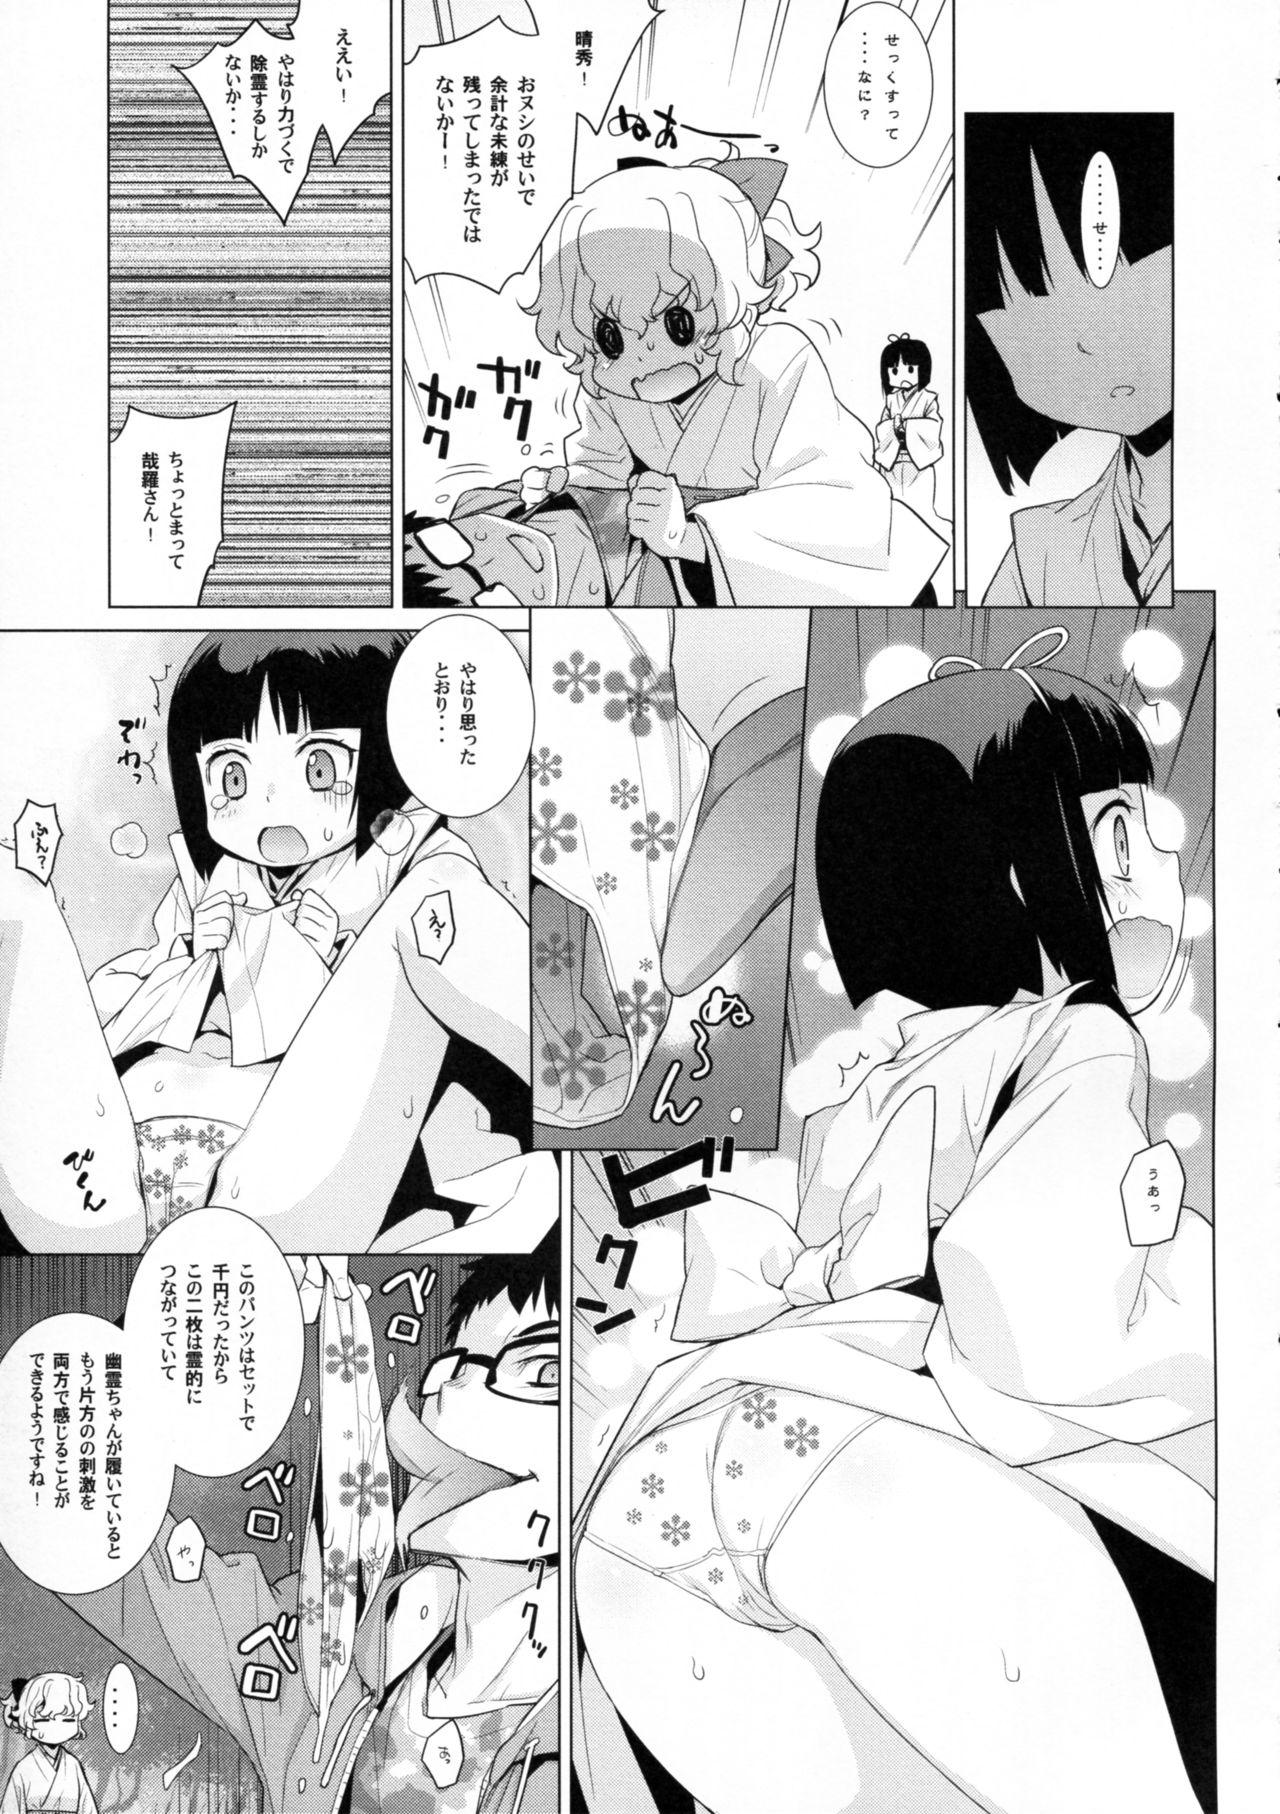 Nalgas Kanara-sama no Nichijou Kyuu - Tonari no miko-san wa minna warau Threeway - Page 13